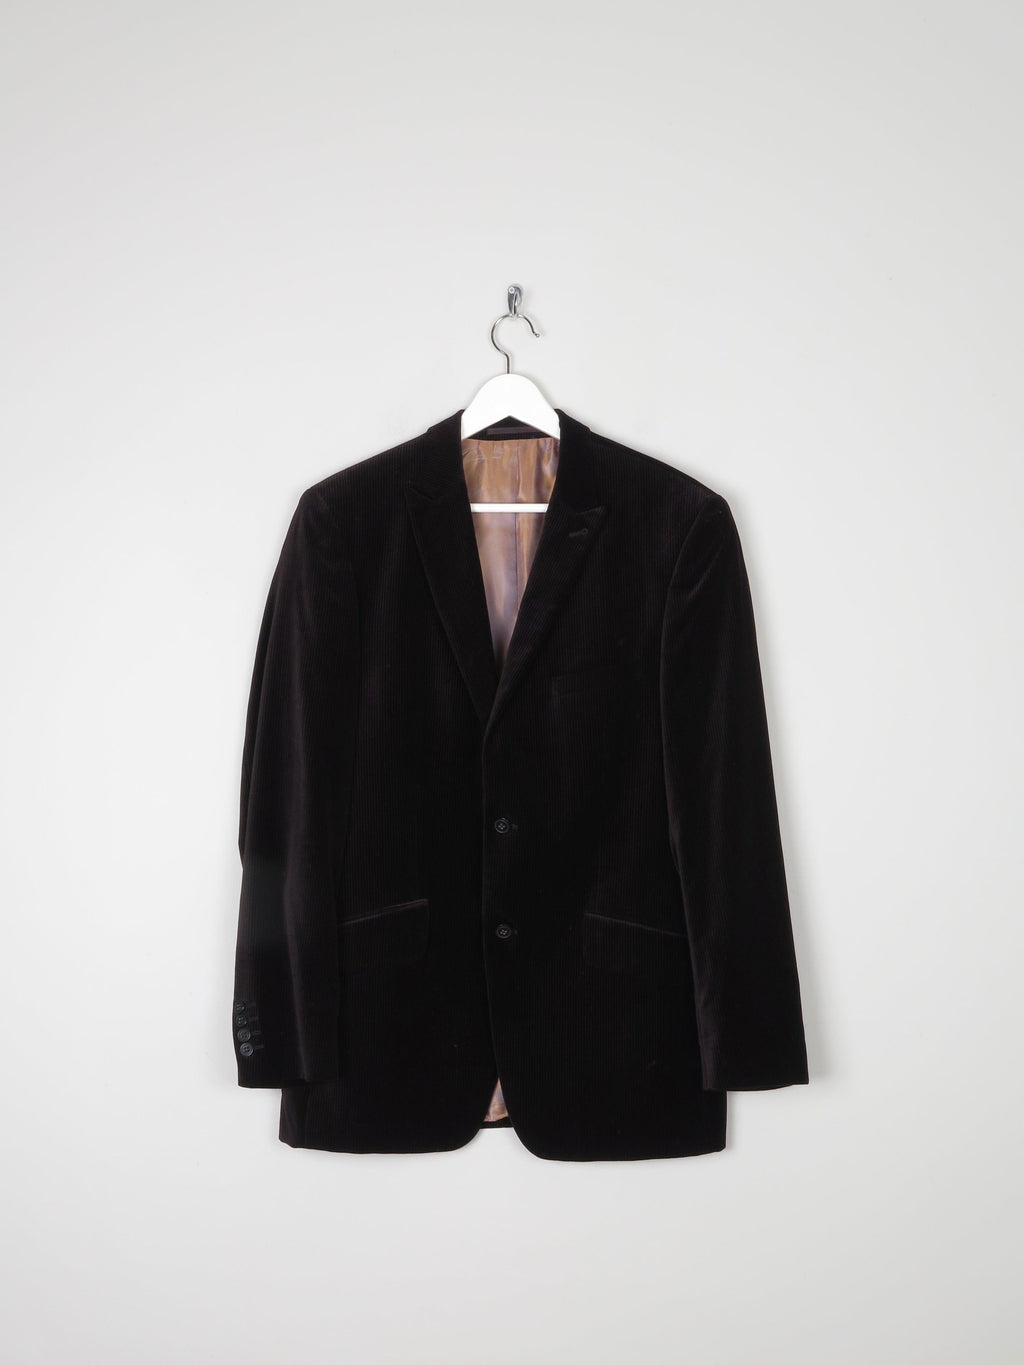 Men's Remus  Brown Pinstripe Velvet Jacket 38/40R - The Harlequin